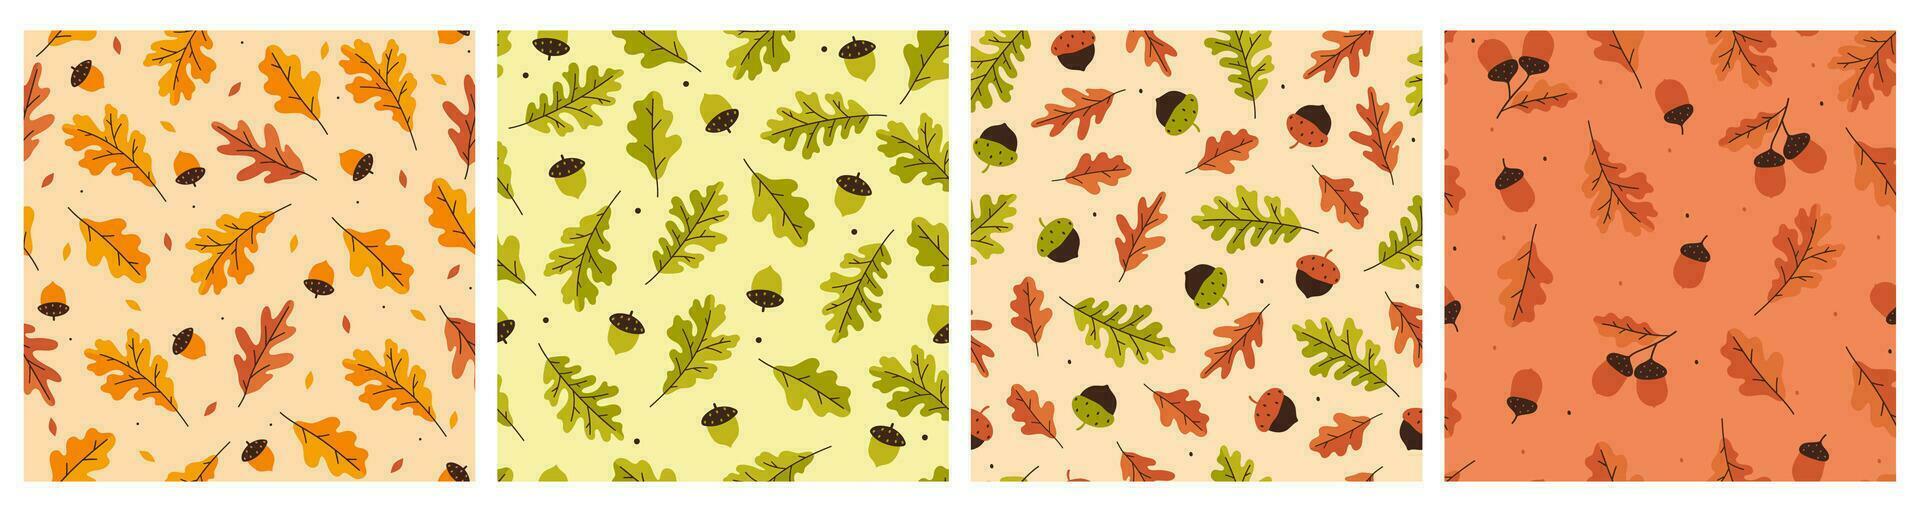 coleção do outono desatado padrões com nozes e carvalho folhas. vetor gráficos.